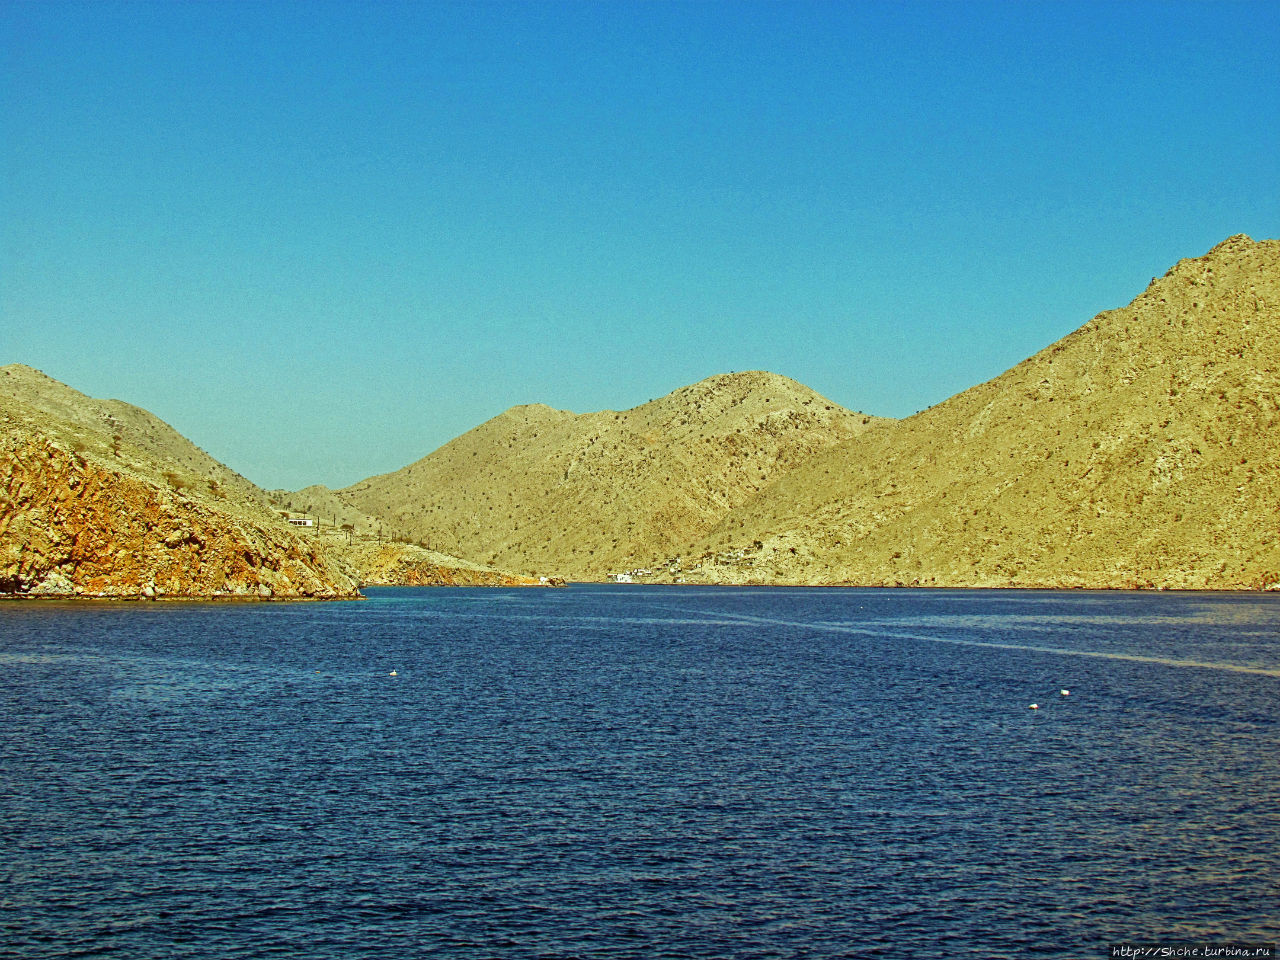 а вот и конечная бухта Загхи, Оман